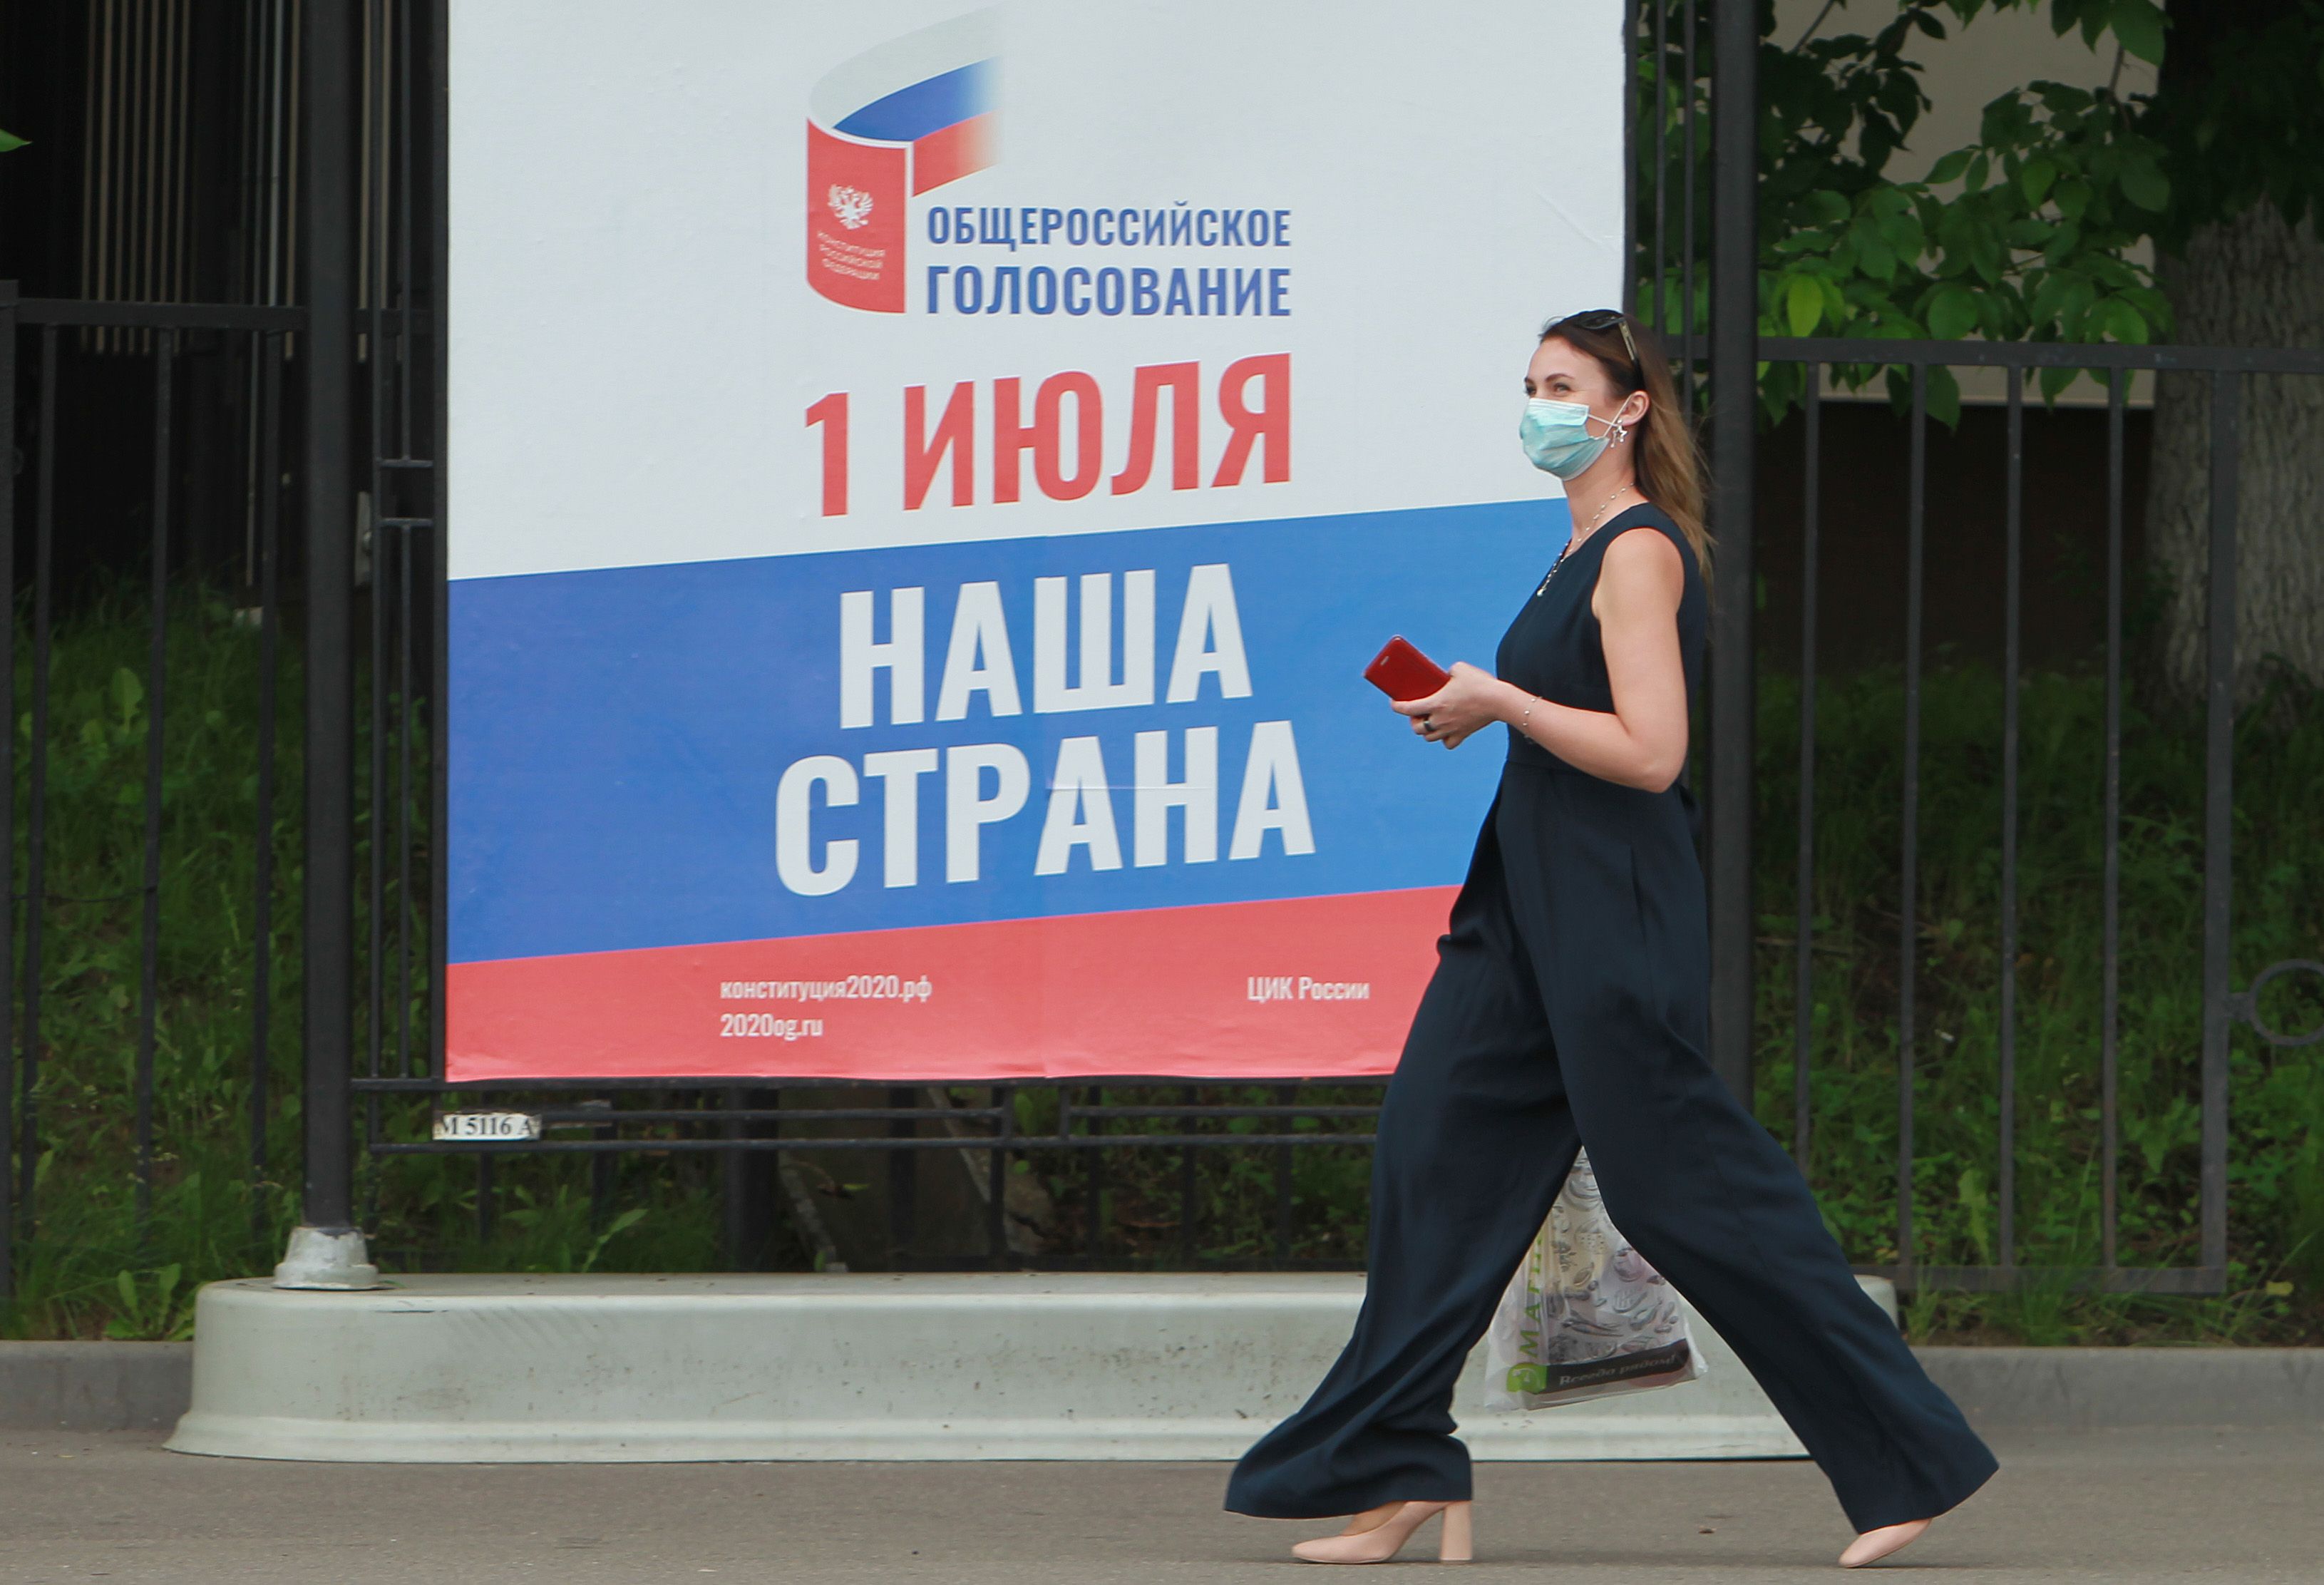 Безопасность во время всероссийского голосования по поправкам в Конституцию будет обеспечена на должном уровне. Фото: Наталия Нечаева 